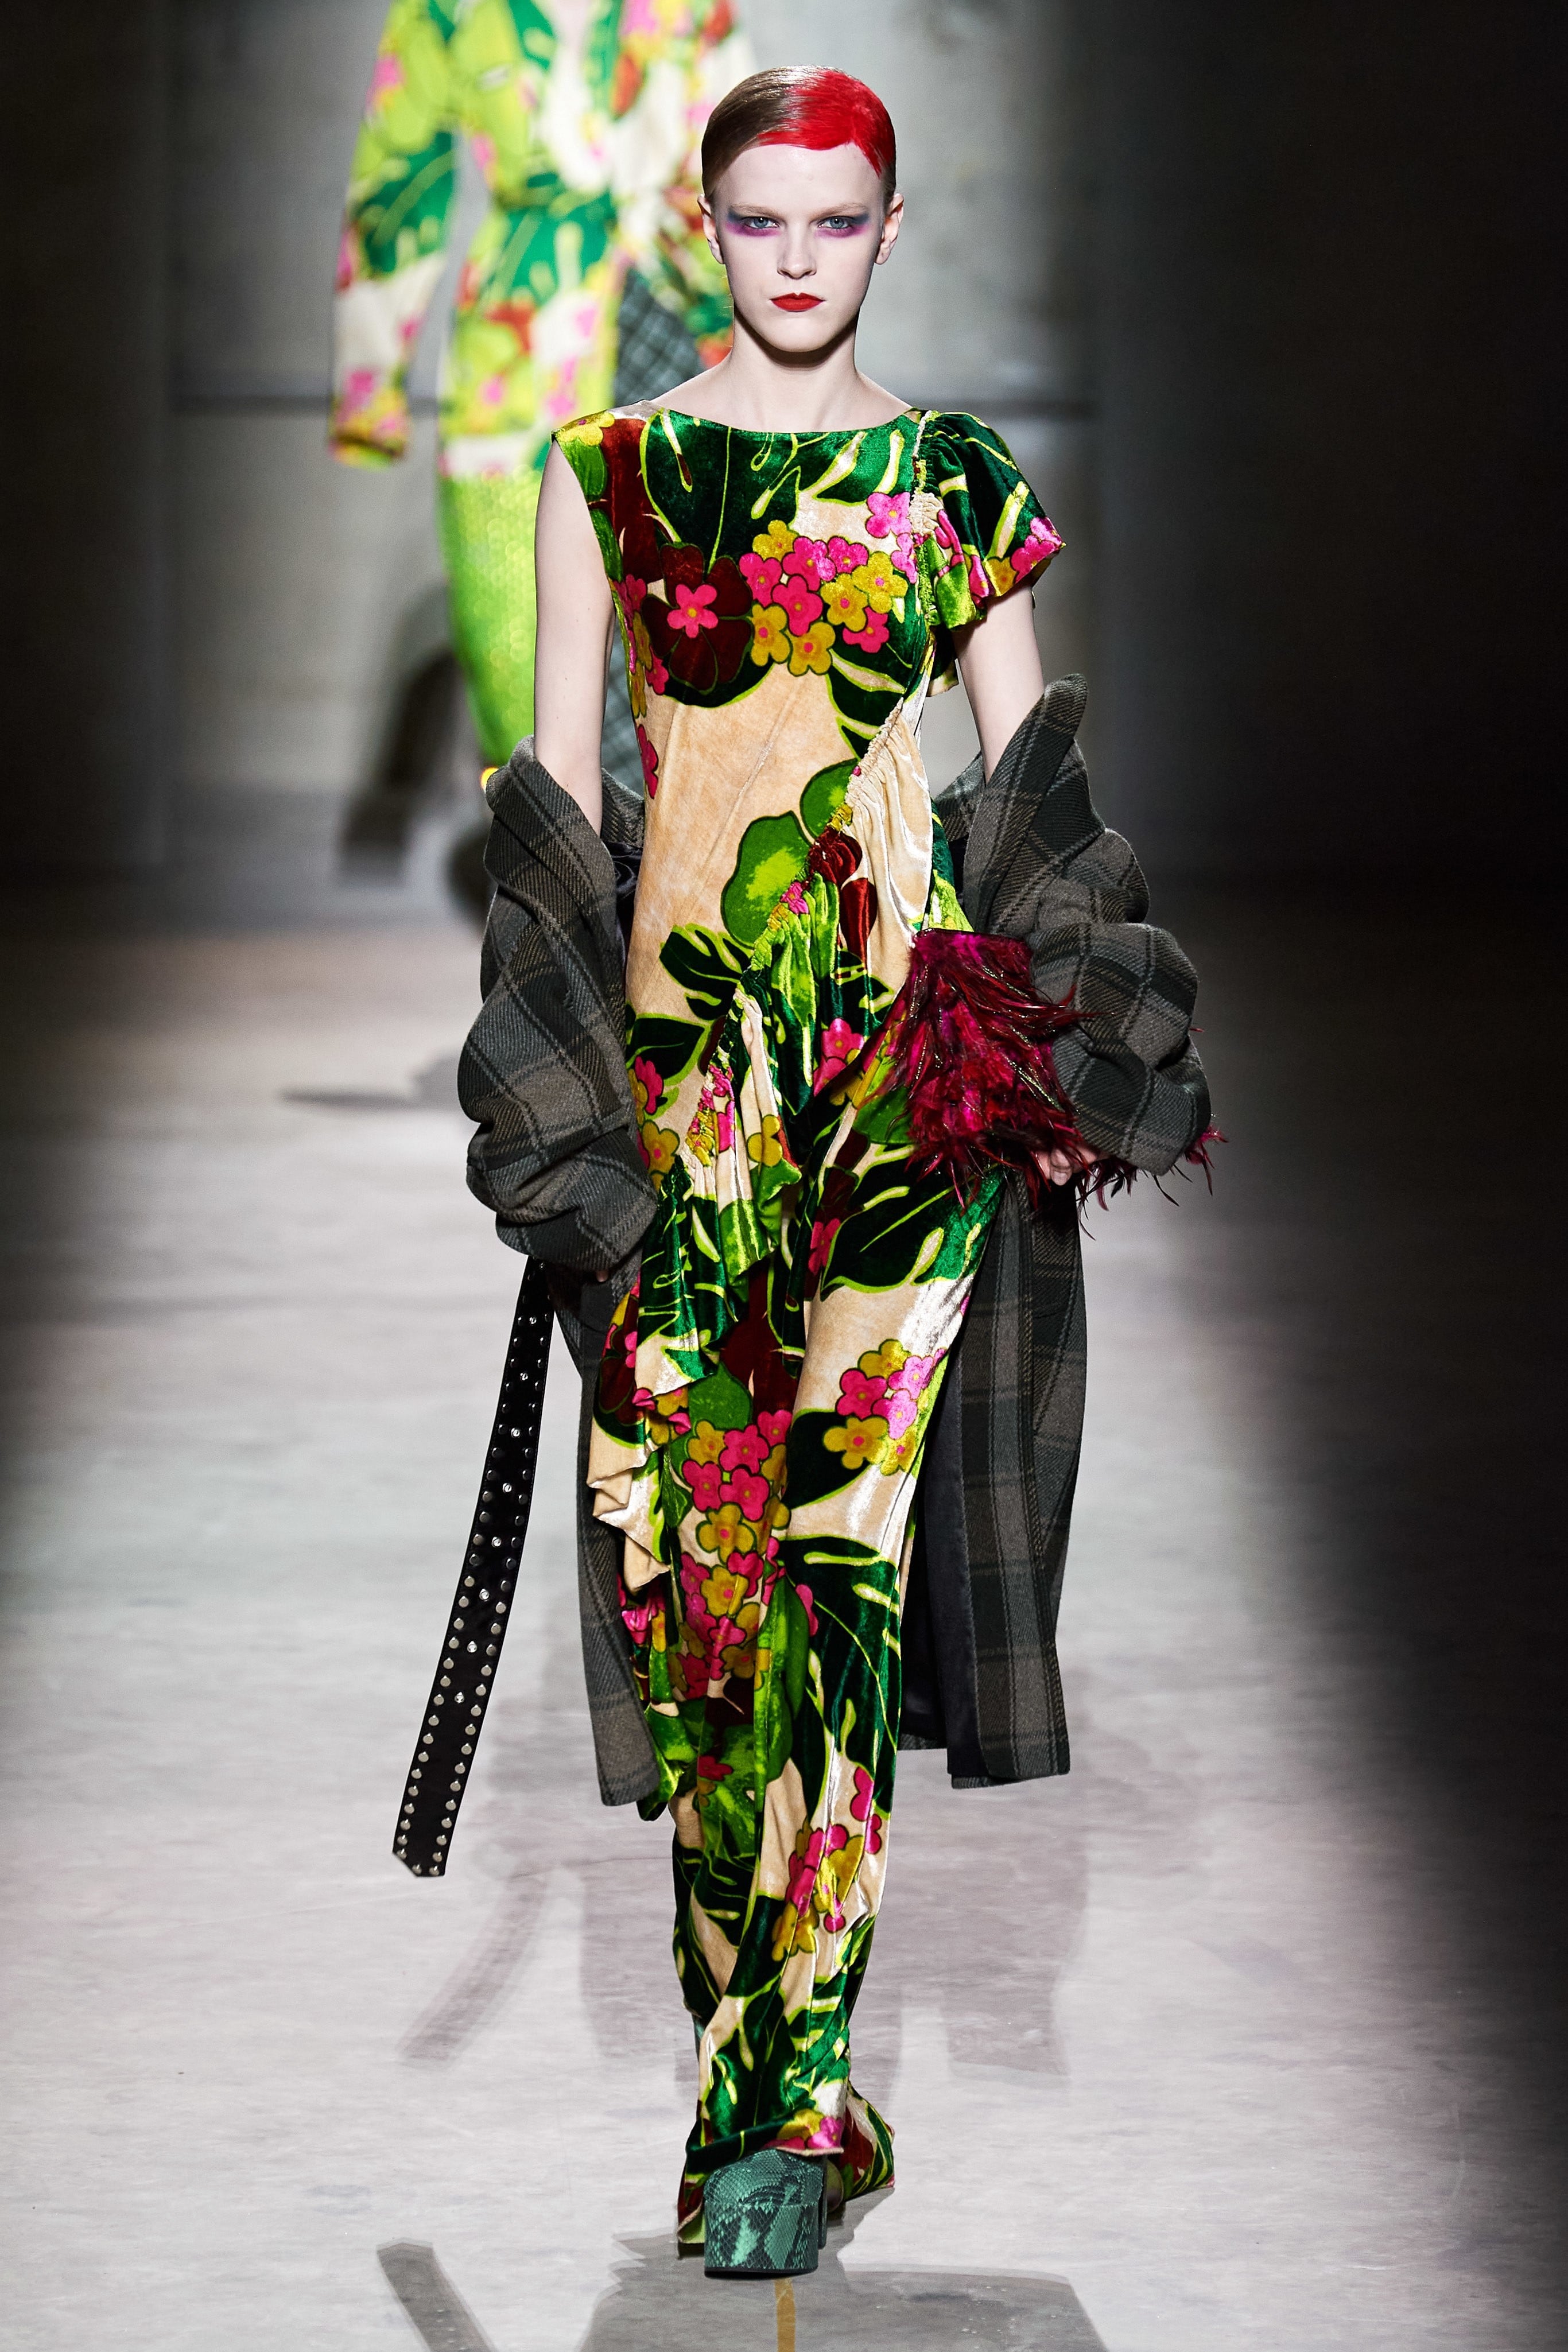 Thời trang nữ quyền của Dior tại Paris Fashion Week - 18